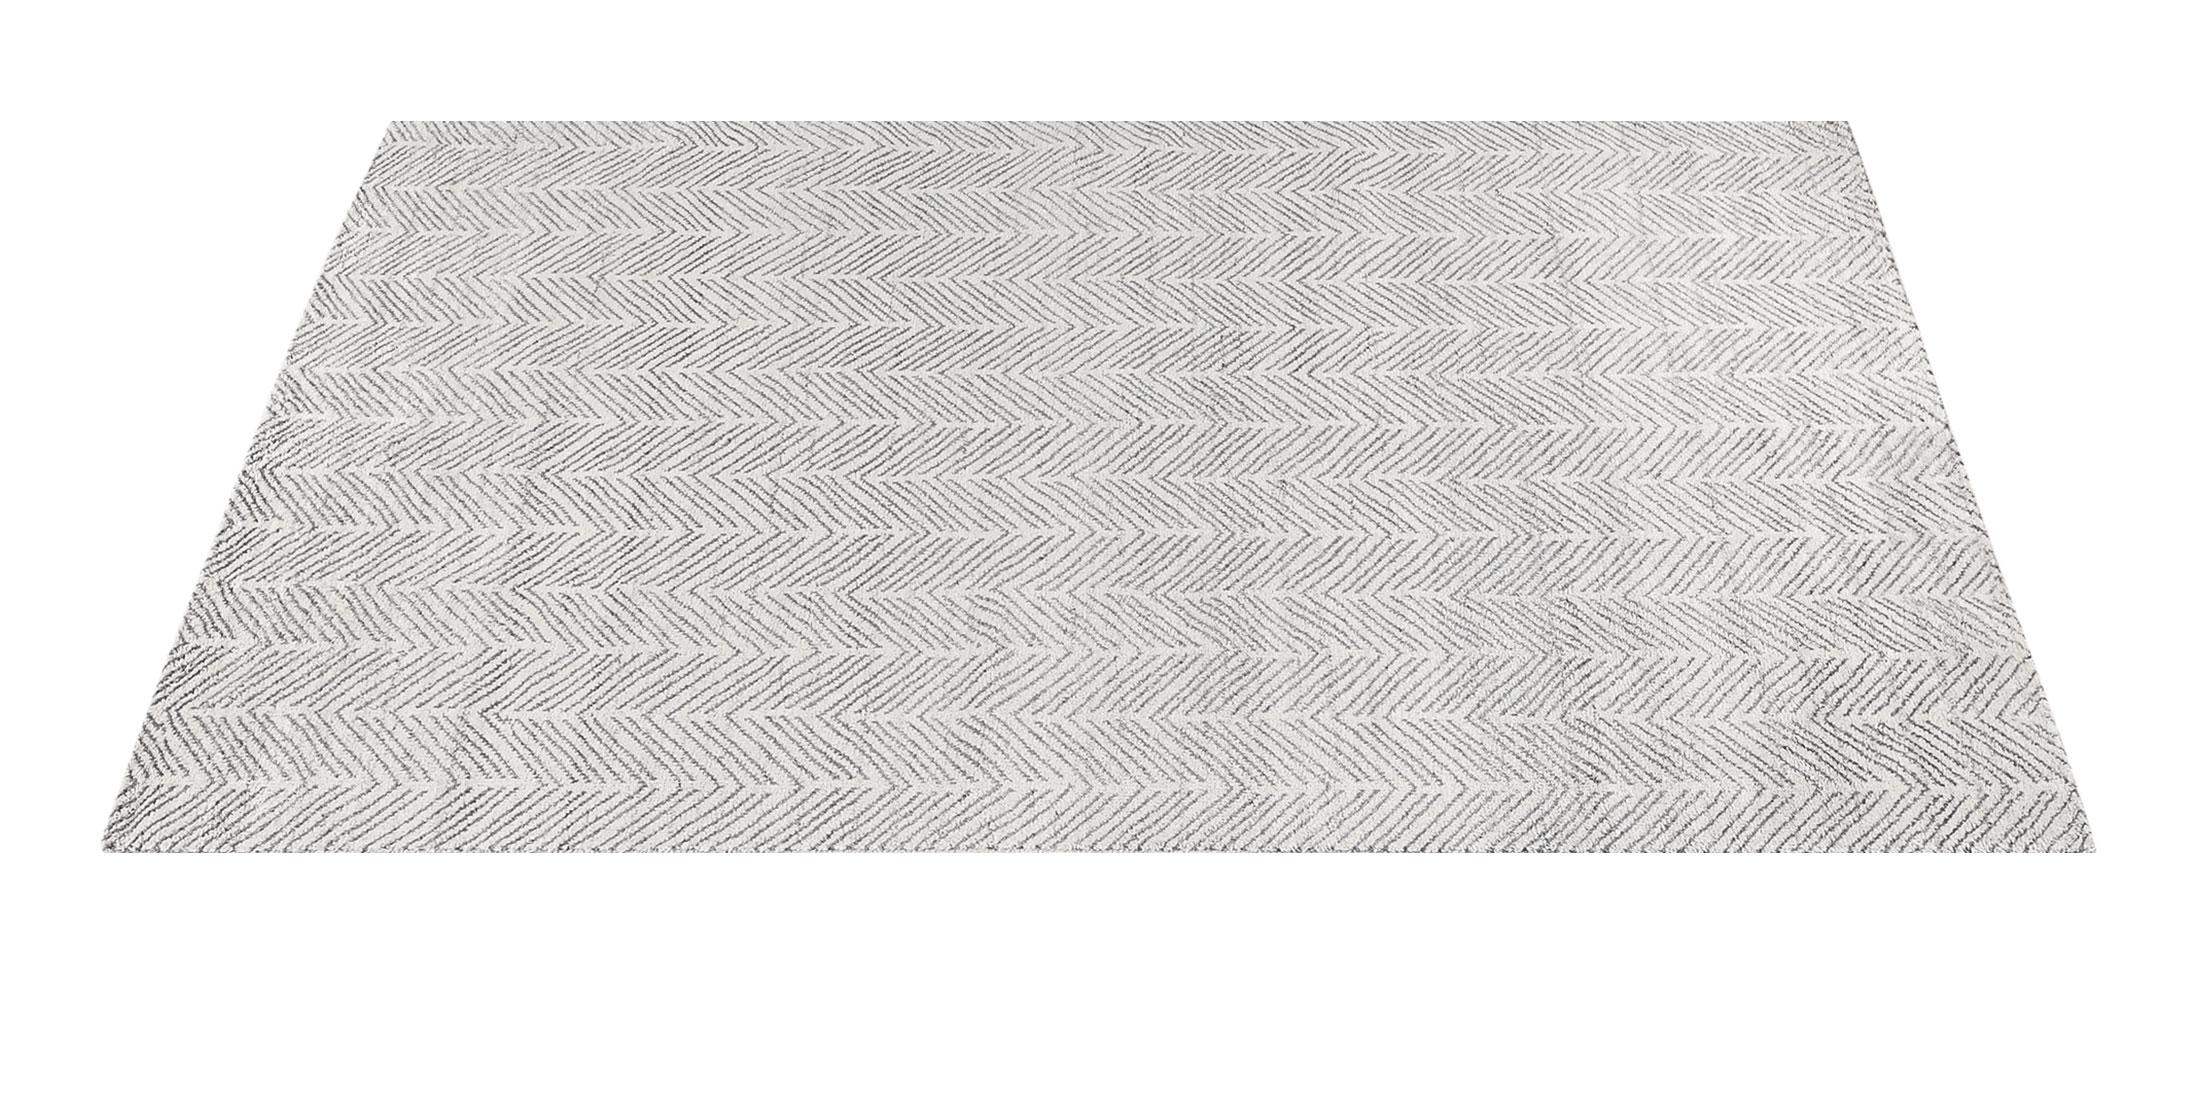 For Sale: White (White/Silver) Ben Soleimani Alia Rug– Hand-woven Chevron Wool + Viscose Black/Gray 10'x14' 2